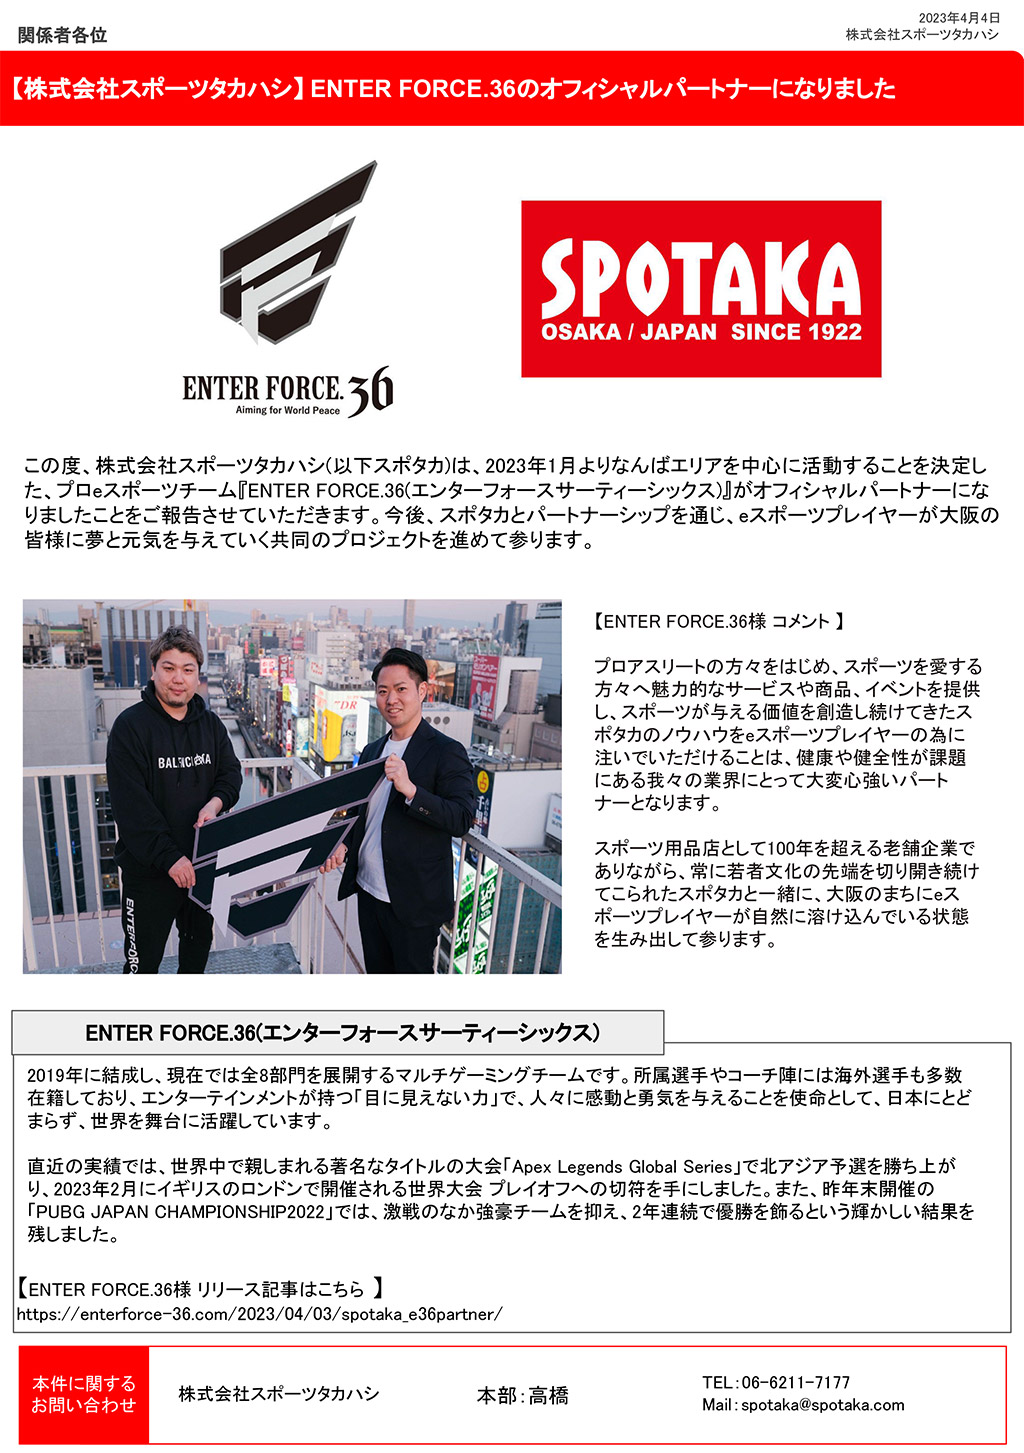 2023/04/04 スポタカリリース ENTER FORCE36 エンターフォースサーティーシックス オフィシャルパートナー